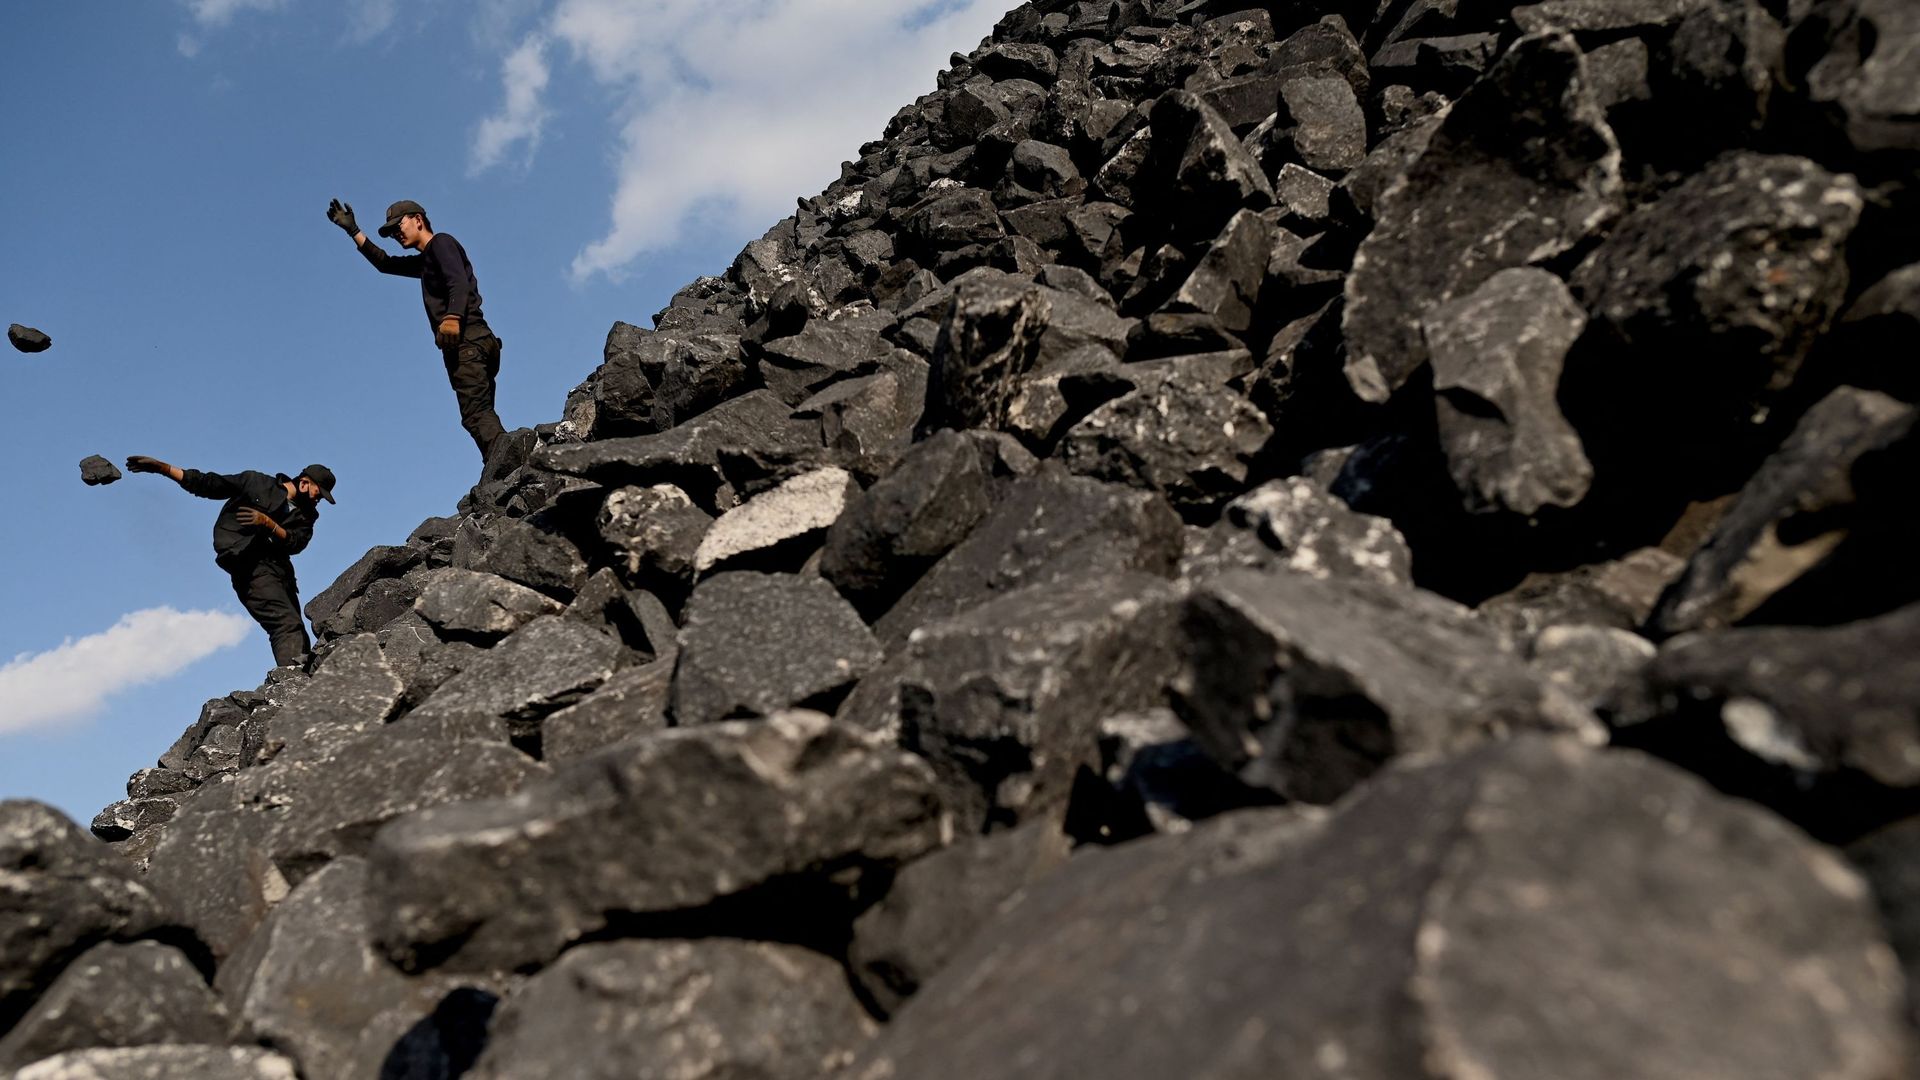 Des ouvriers trient des pierres près d’une mine de charbon à Datong, dans la province chinoise du Shanxi (nord), le 2 novembre 2021 (illustration)